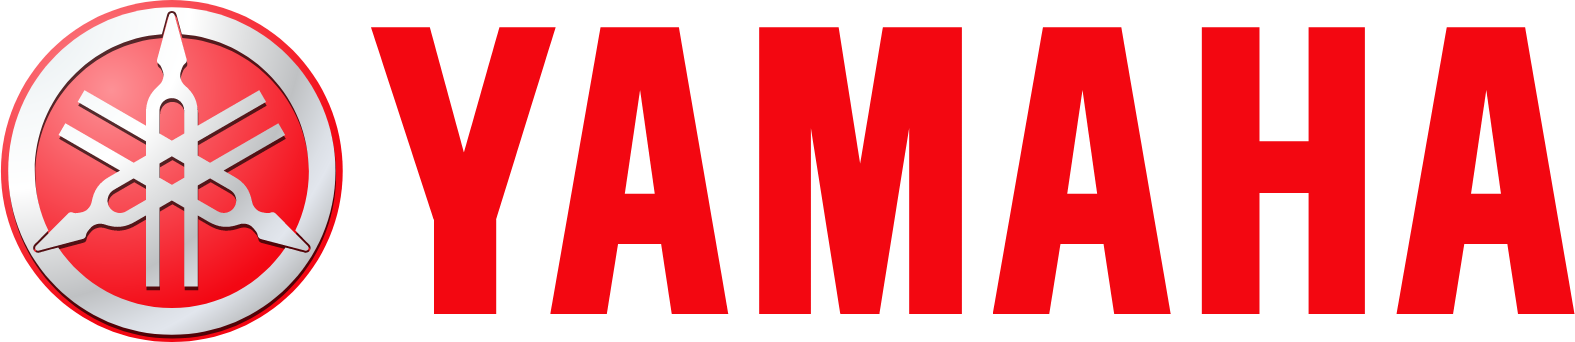 Yamaha Motor logo large (transparent PNG)